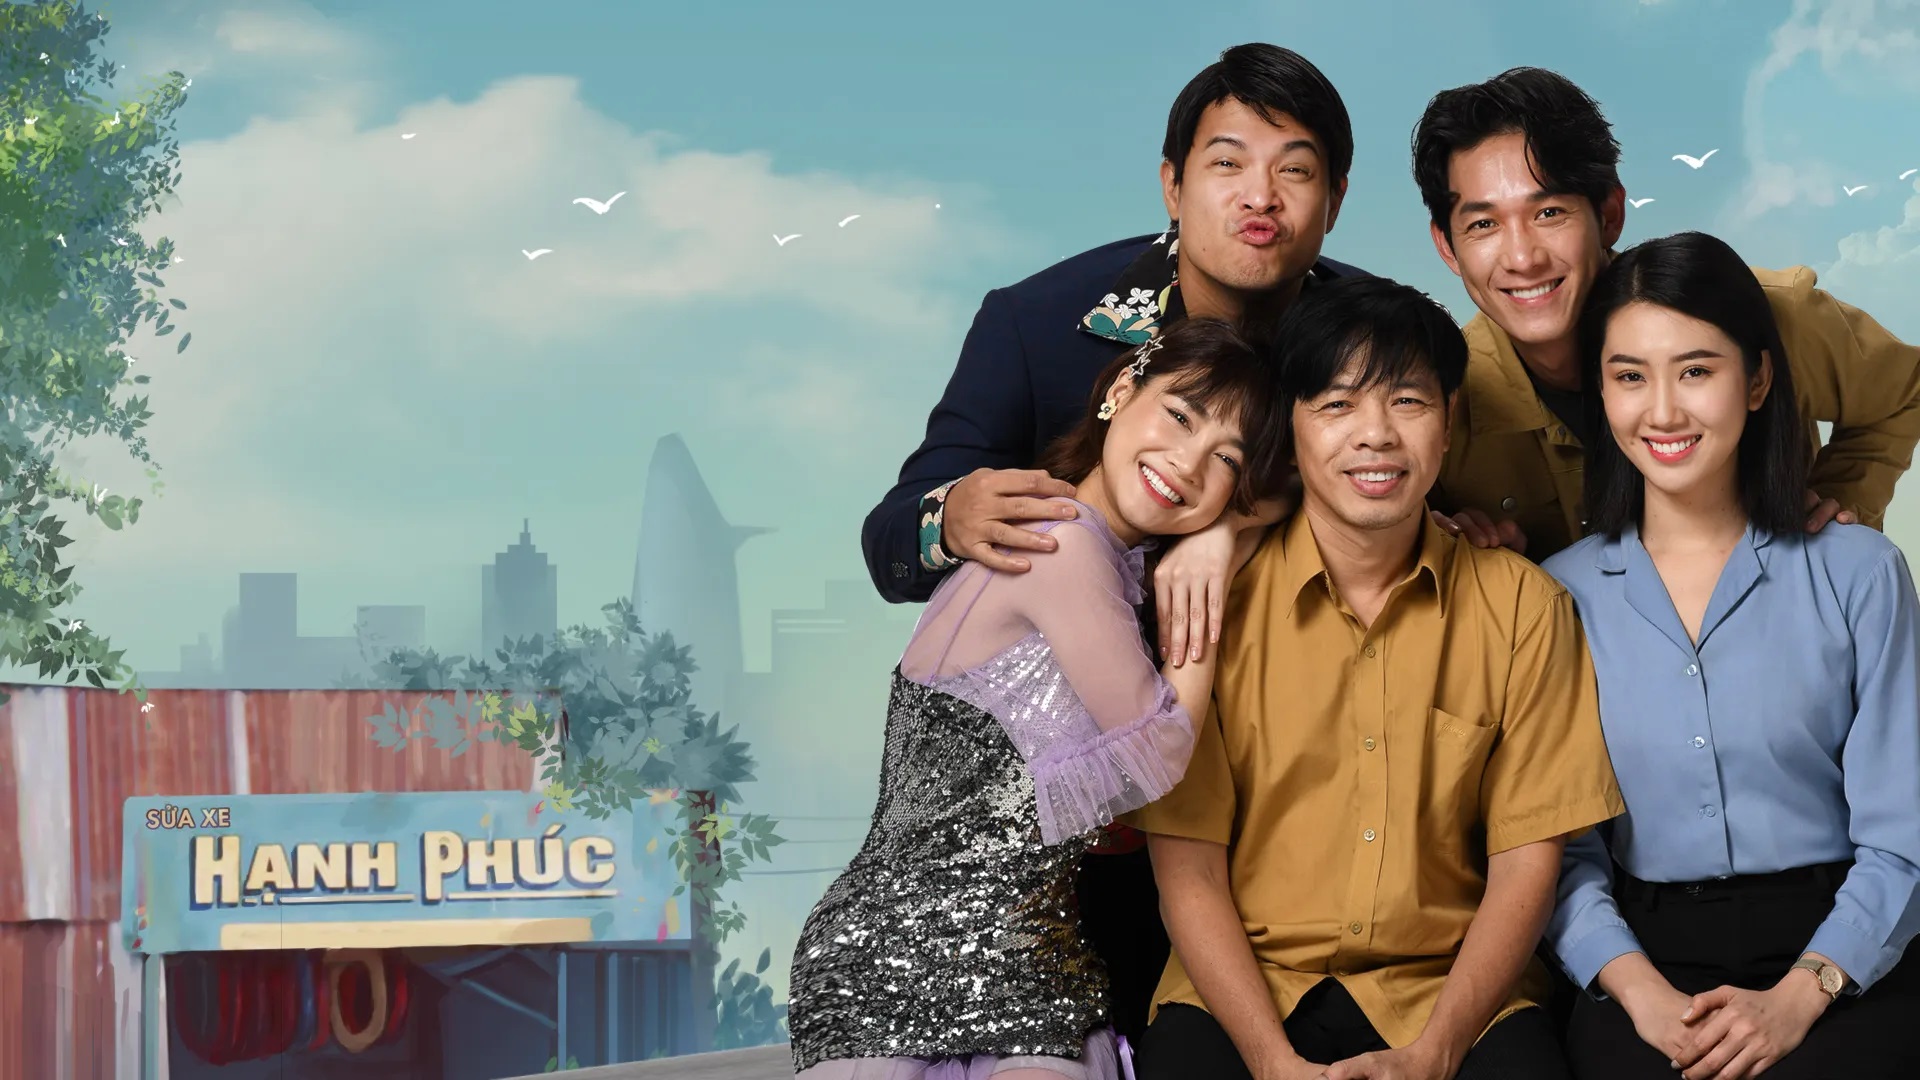 "Cây táo nở hoa" - bộ phim đề tài gia đình lấy đi nước mắt của bao khán giả Việt